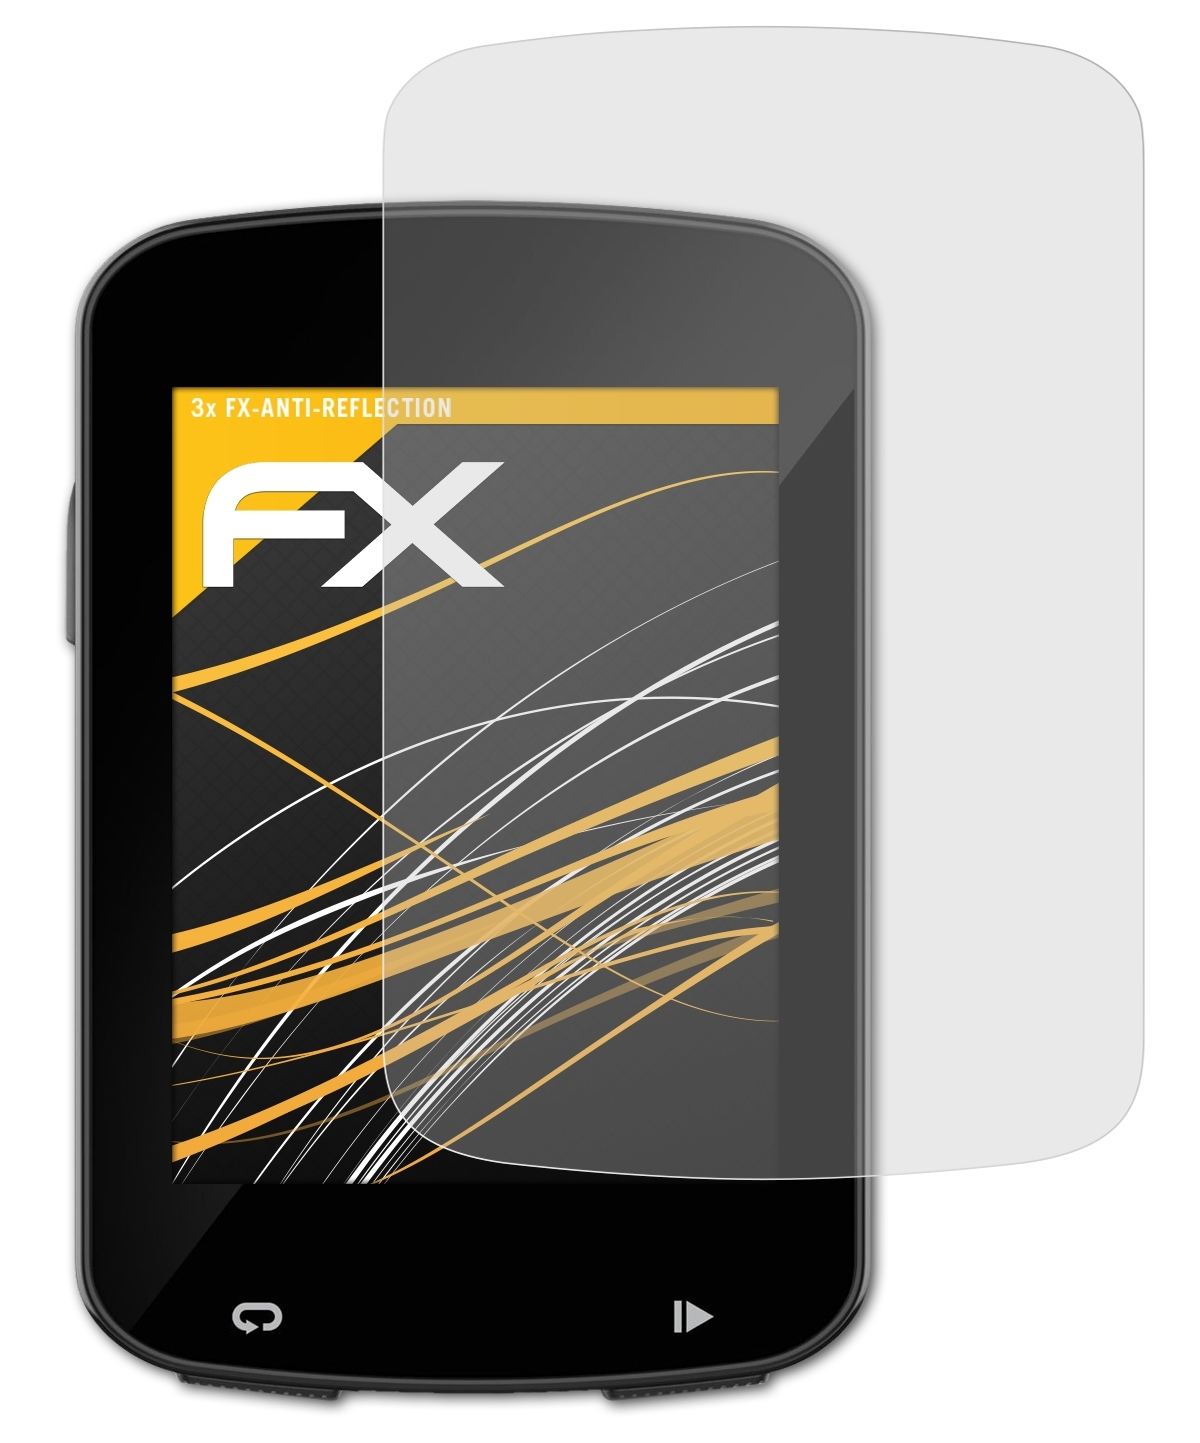 820) 820 Explore FX-Antireflex Garmin / Displayschutz(für Edge ATFOLIX 3x